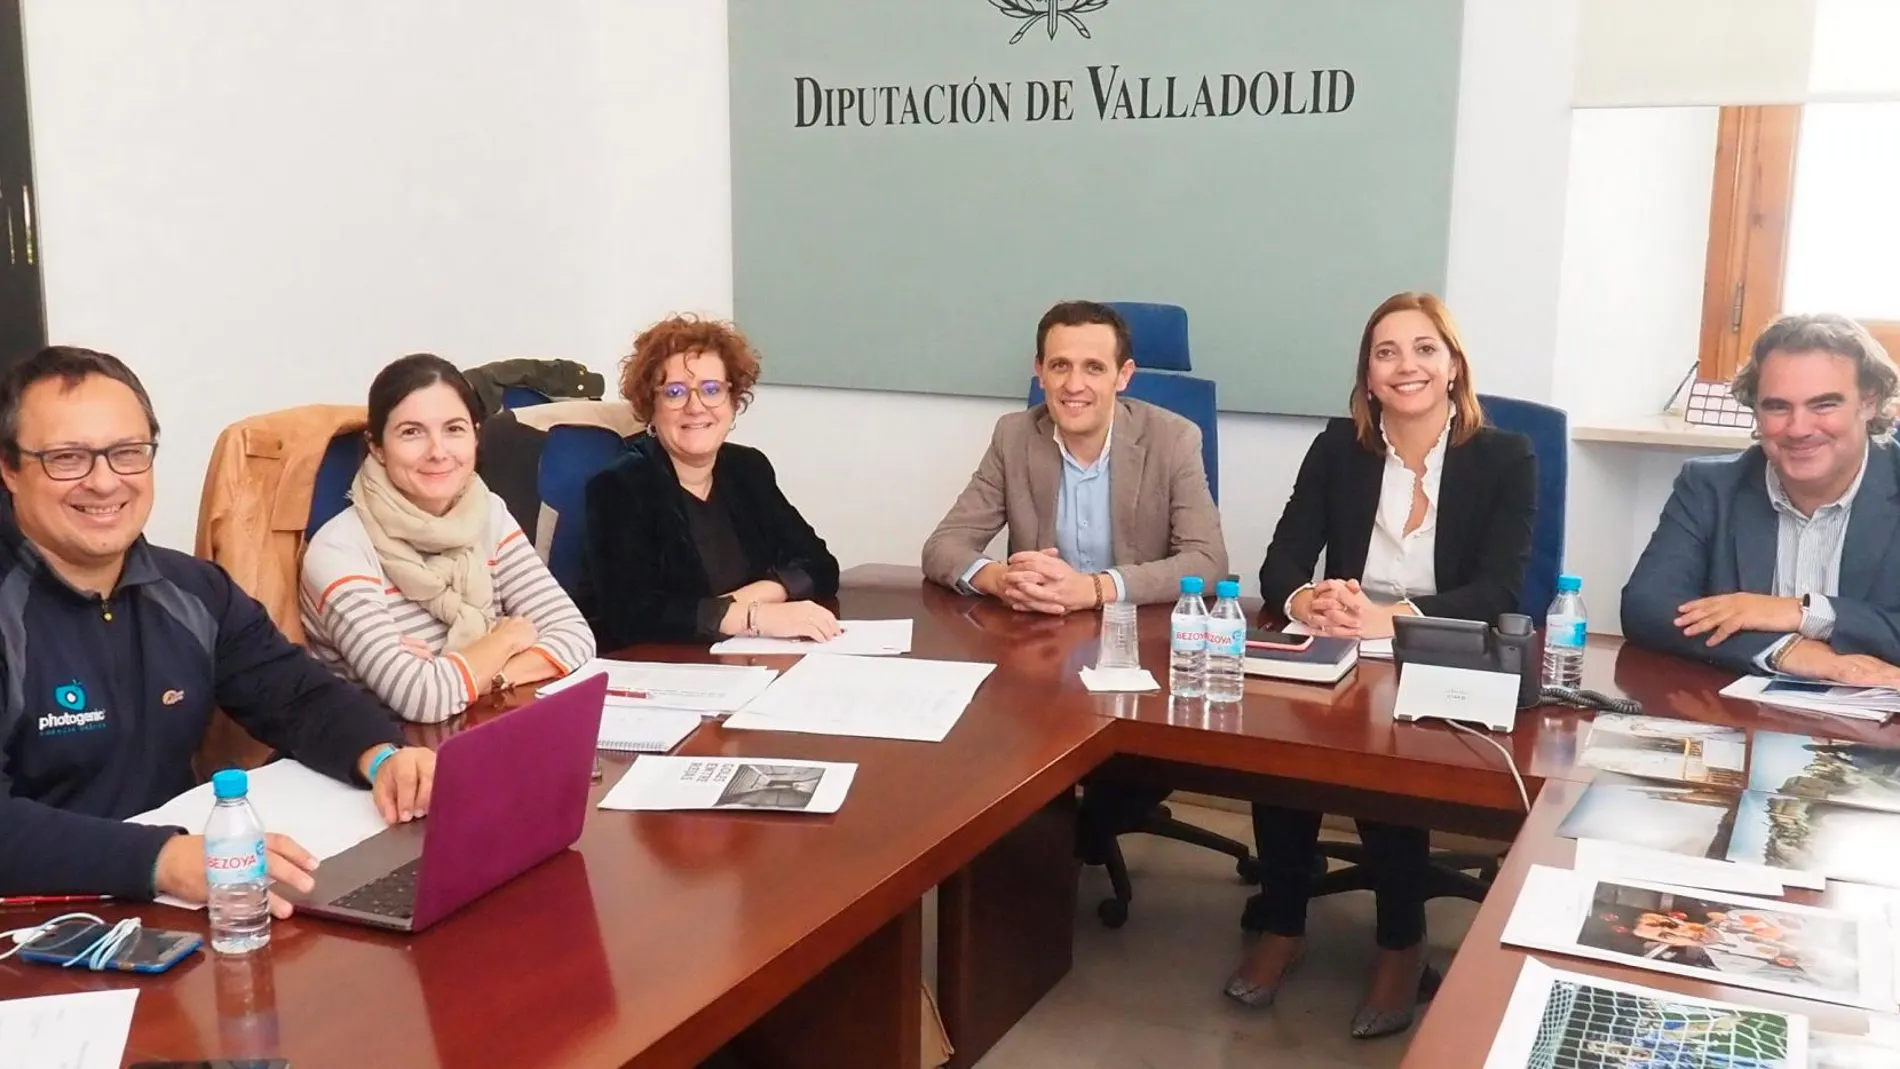 Imagen del jurado junto a Conrado Íscar, presidente de la Diputación de Valladolid